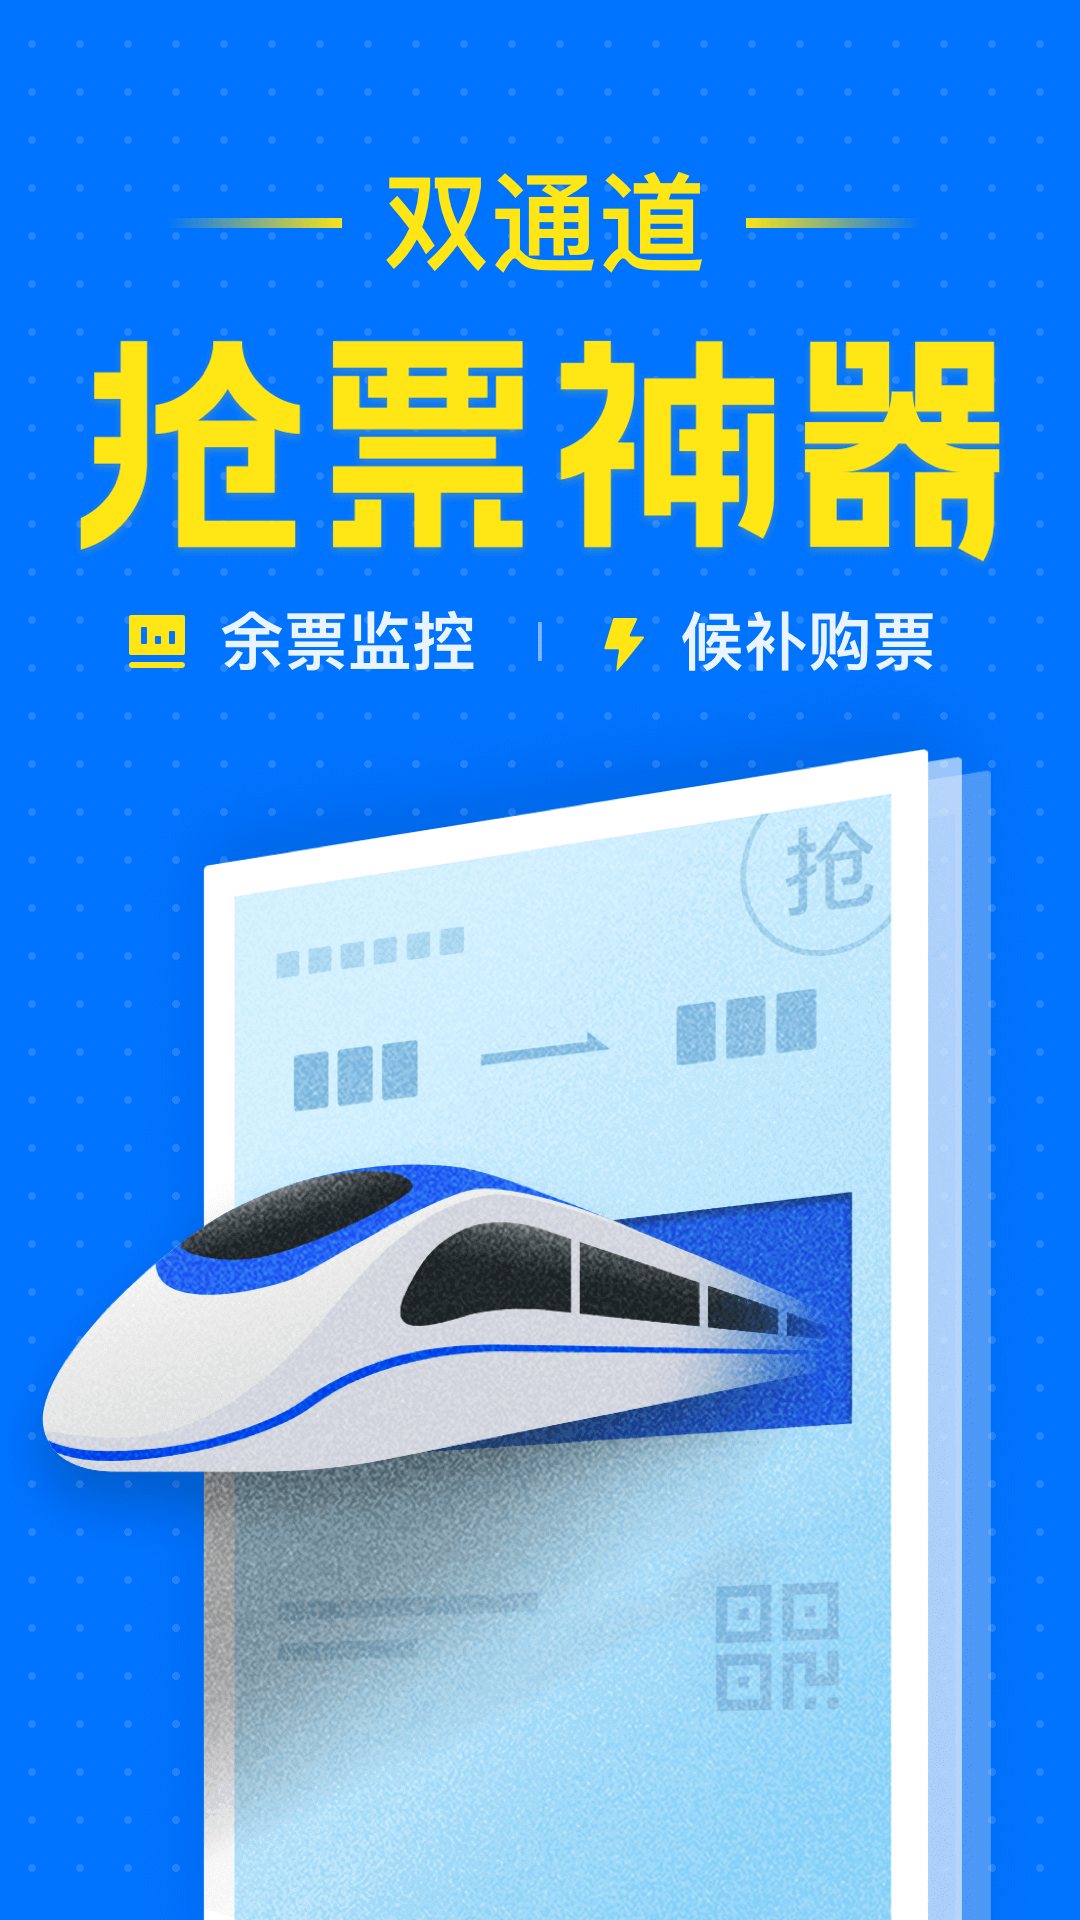 智行火车票12306高铁抢票v6.9.0截图1